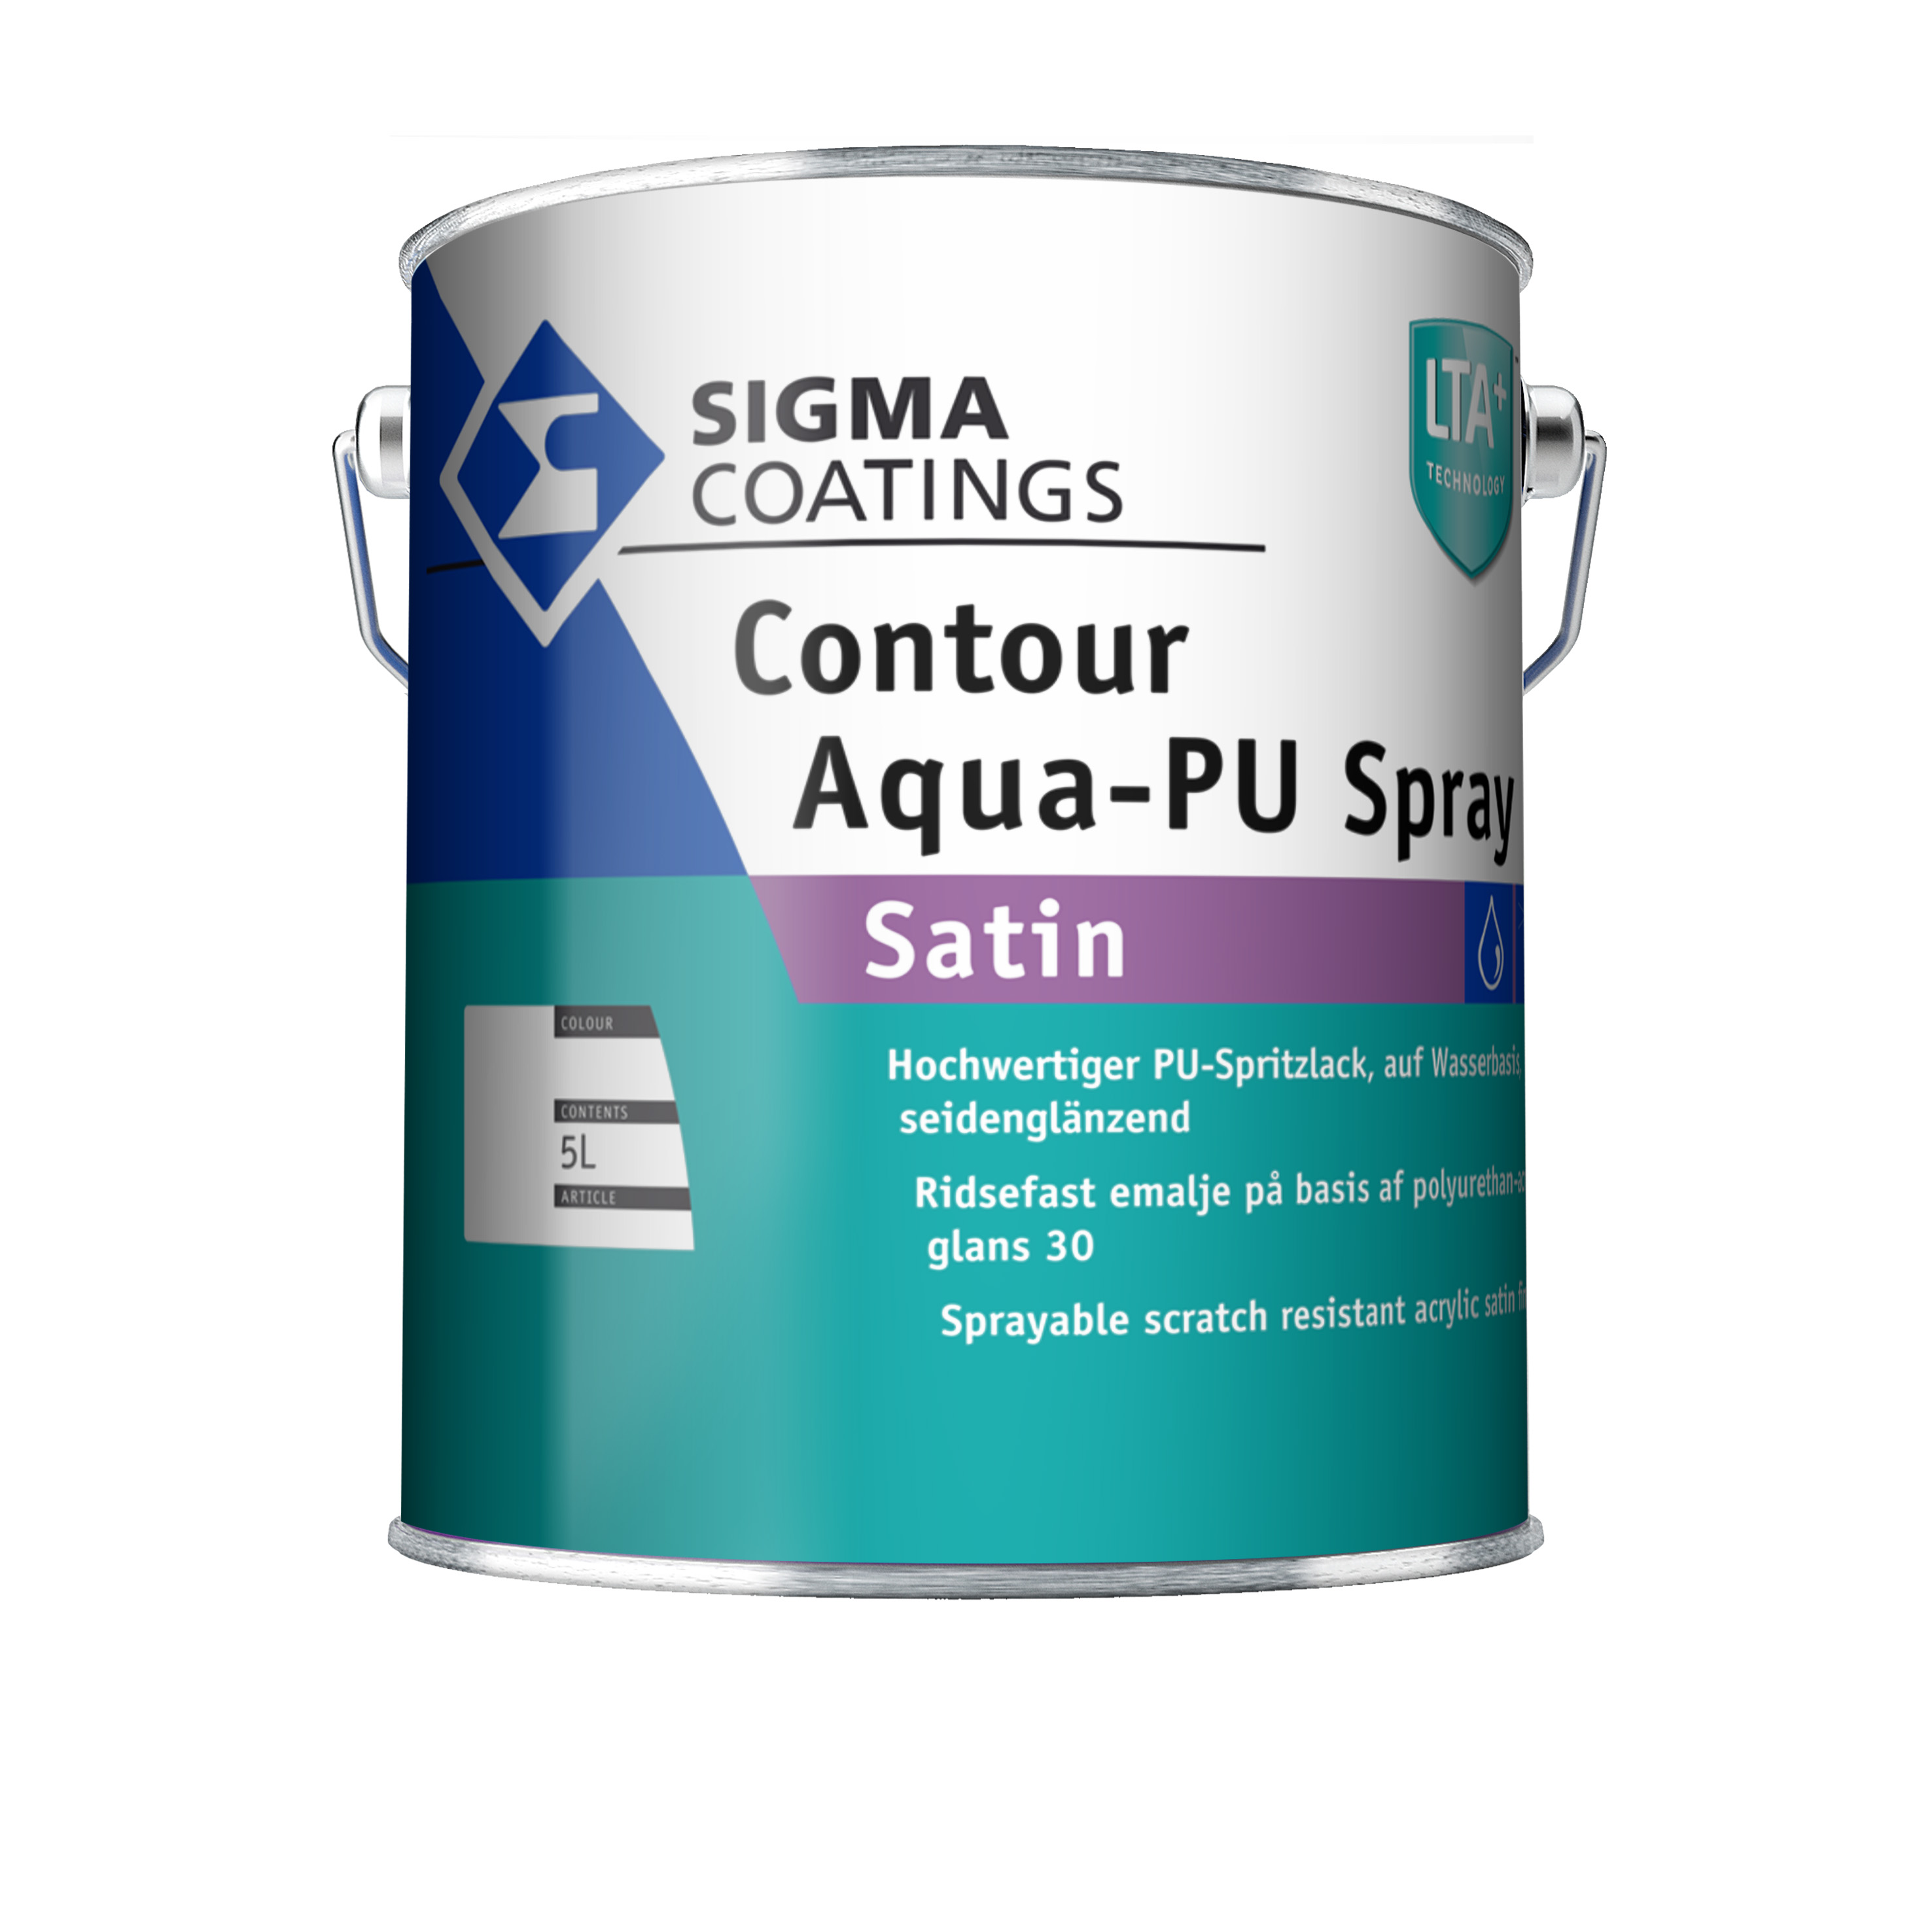 Sigma Contour Aqua-PU Spray Satin